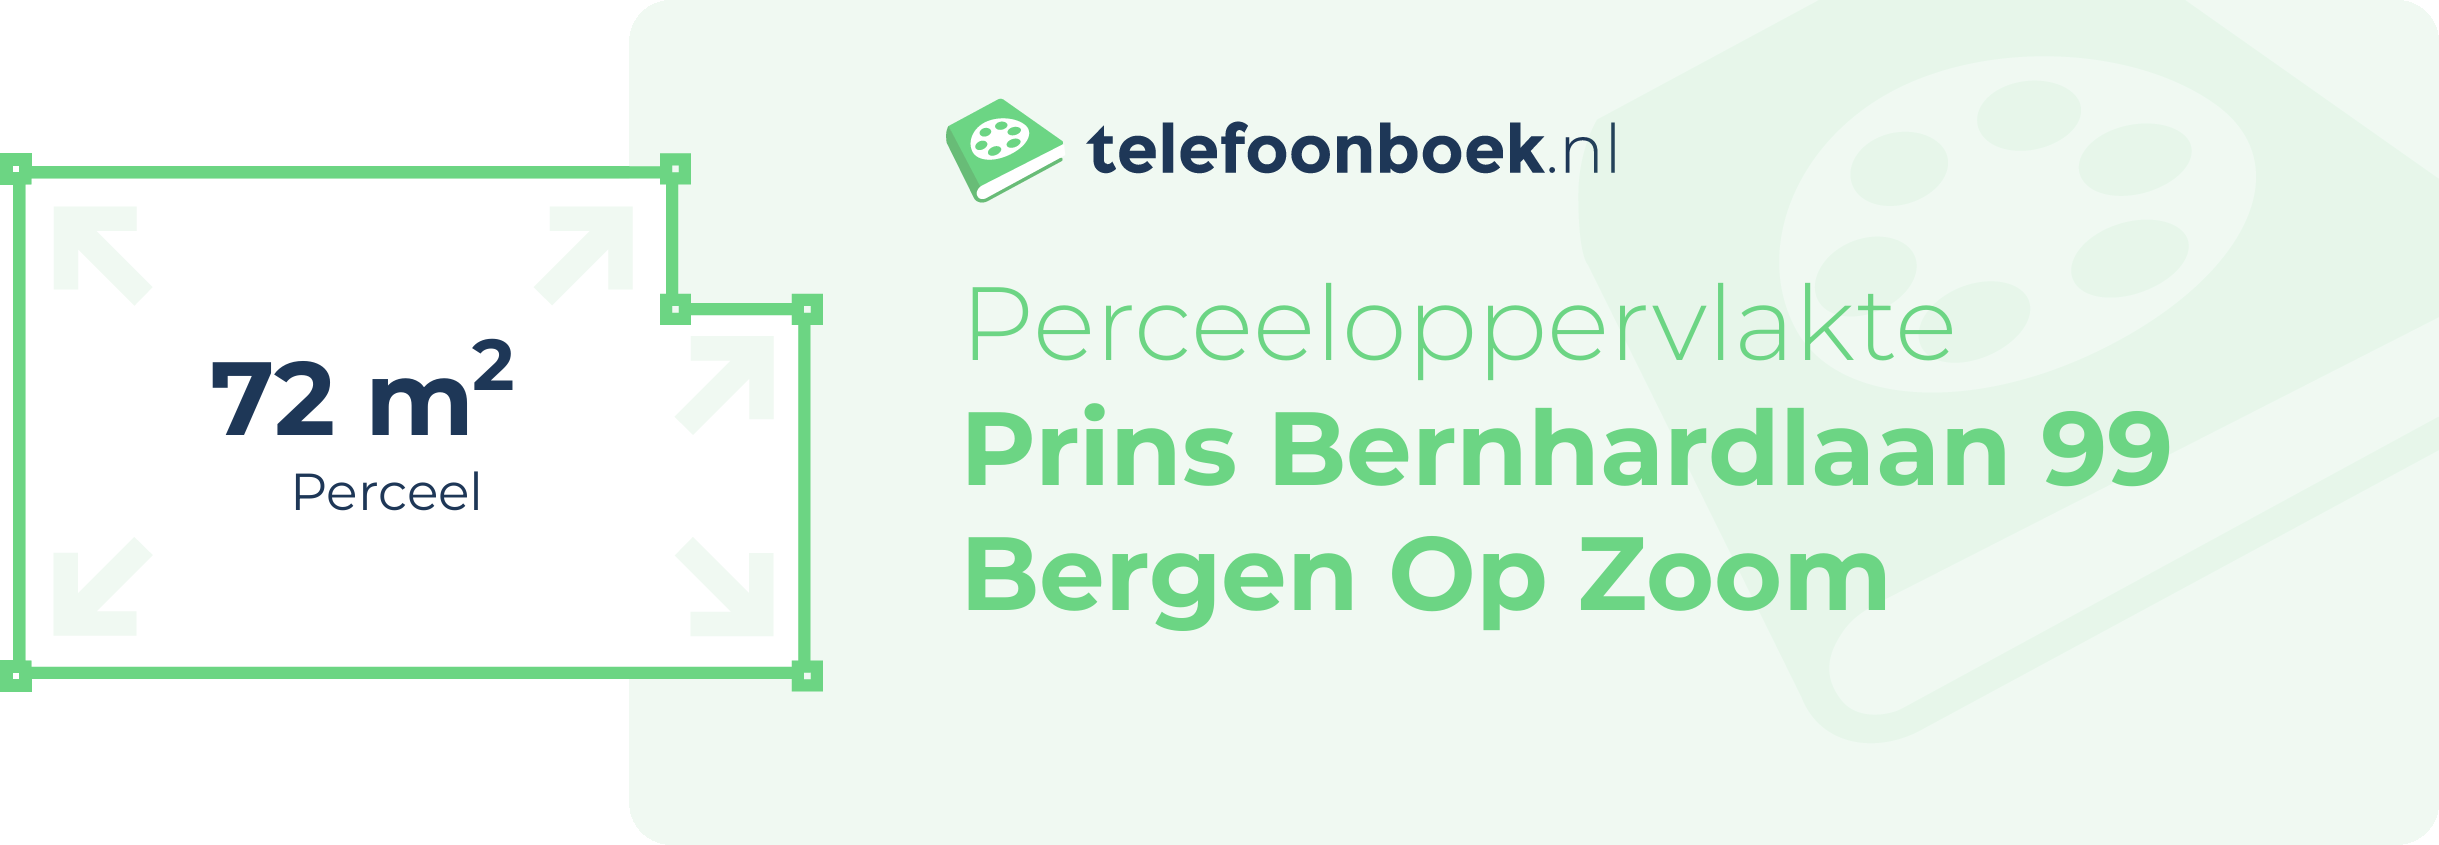 Perceeloppervlakte Prins Bernhardlaan 99 Bergen Op Zoom